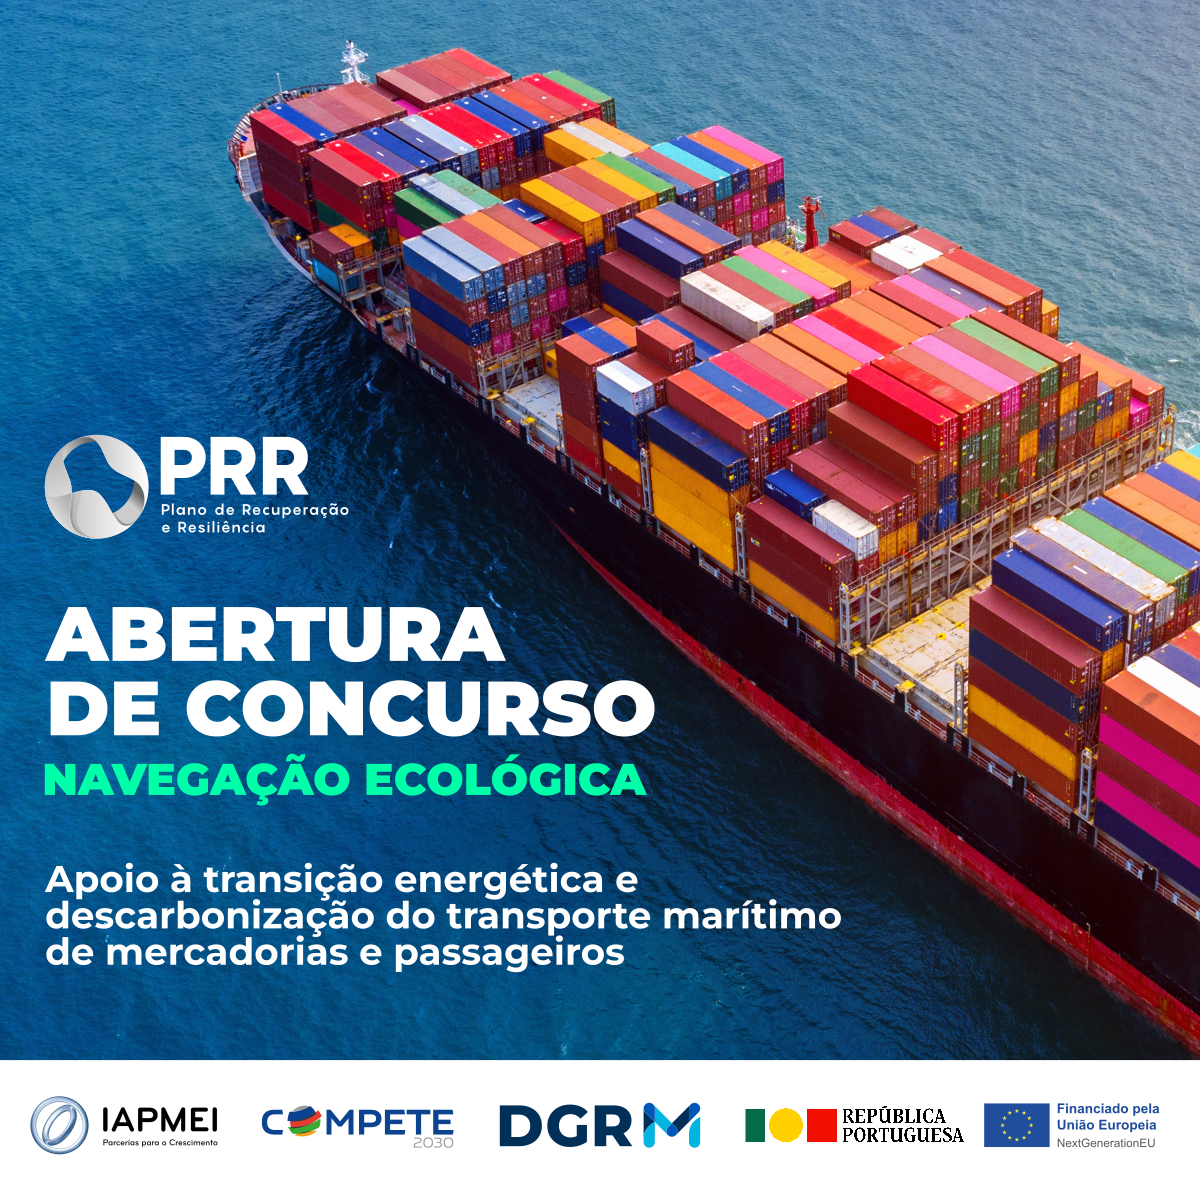  Prorrogação do prazo: Apoio à transição energética e descarbonização do transporte marítimo de mercadorias e de passageiros 